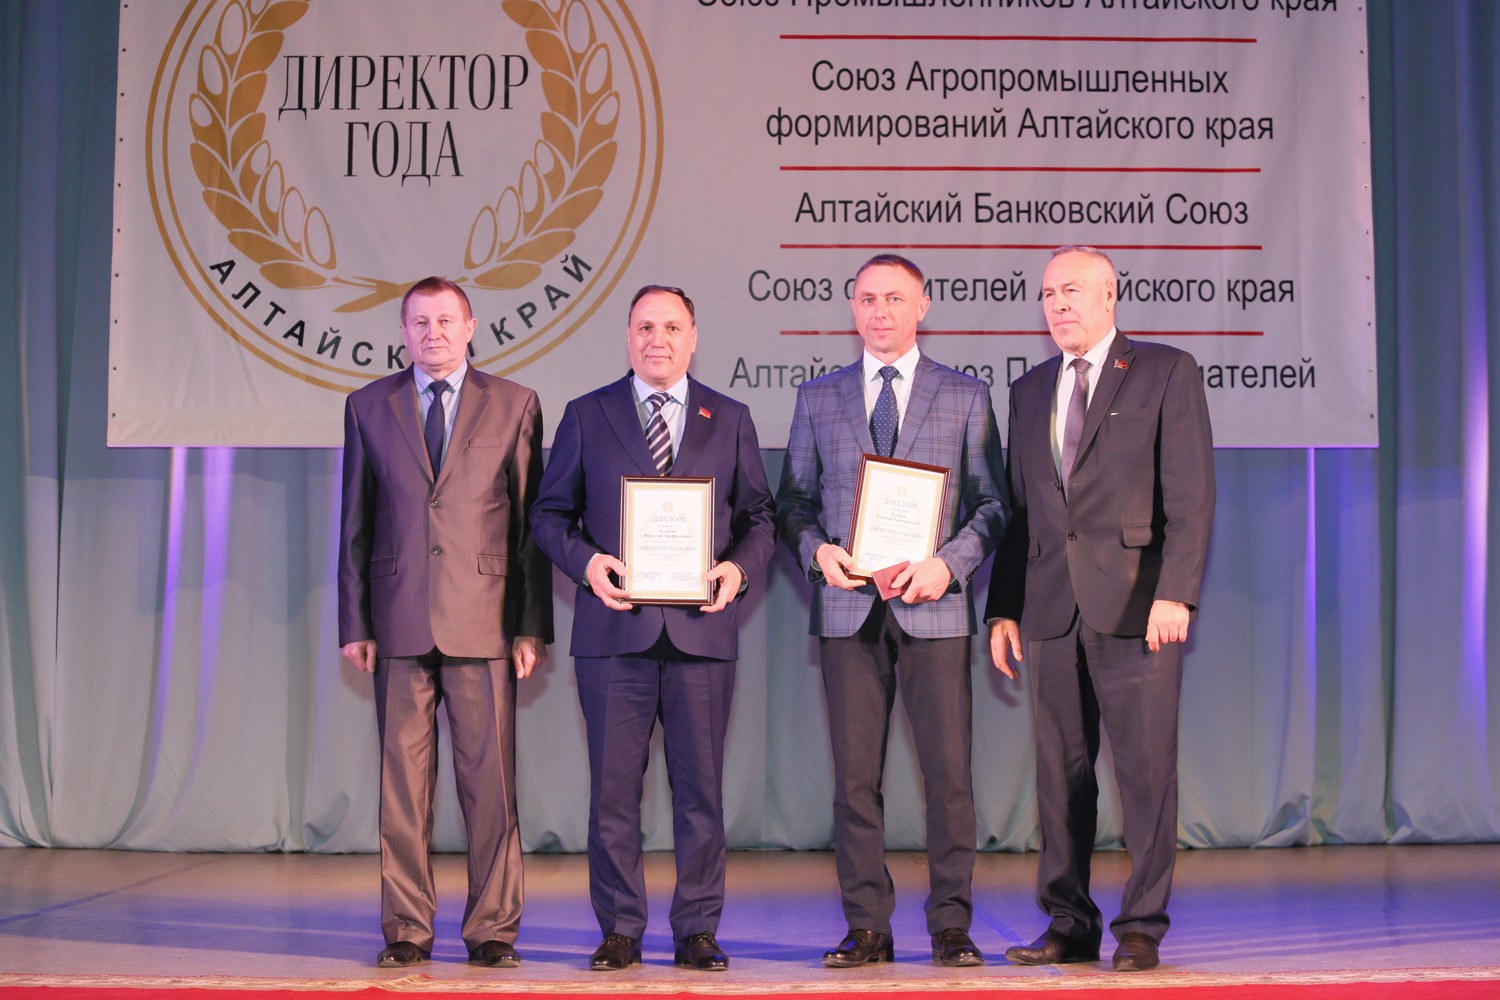 Конкурс директоров. Алтайский банковский Союз. Победители 15 ежегодного конкурса директор года.